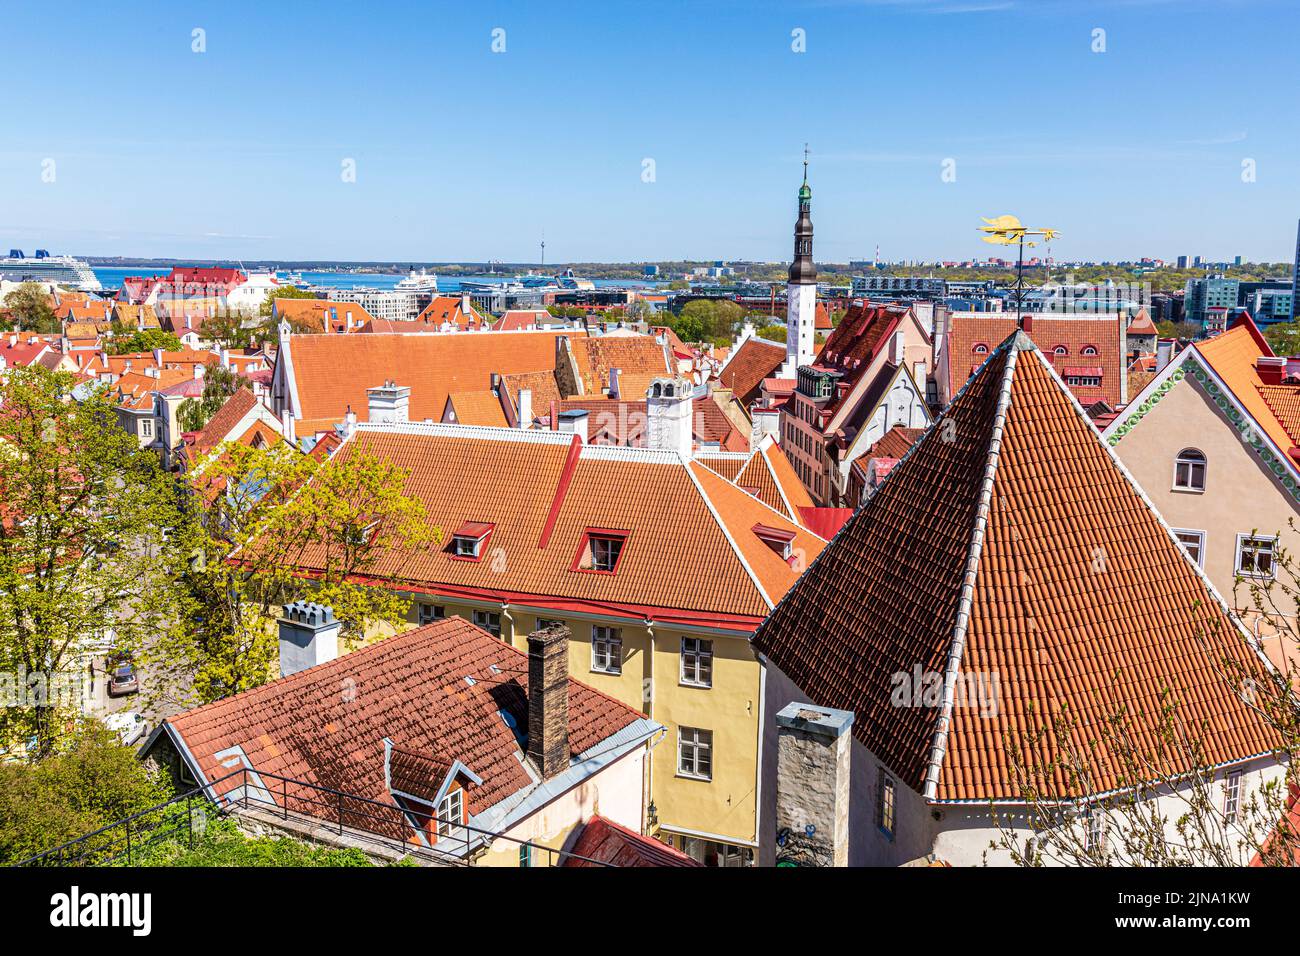 Desde la ciudad alta se puede contemplar las torres del casco antiguo de Tallinn, la capital de Estonia Foto de stock